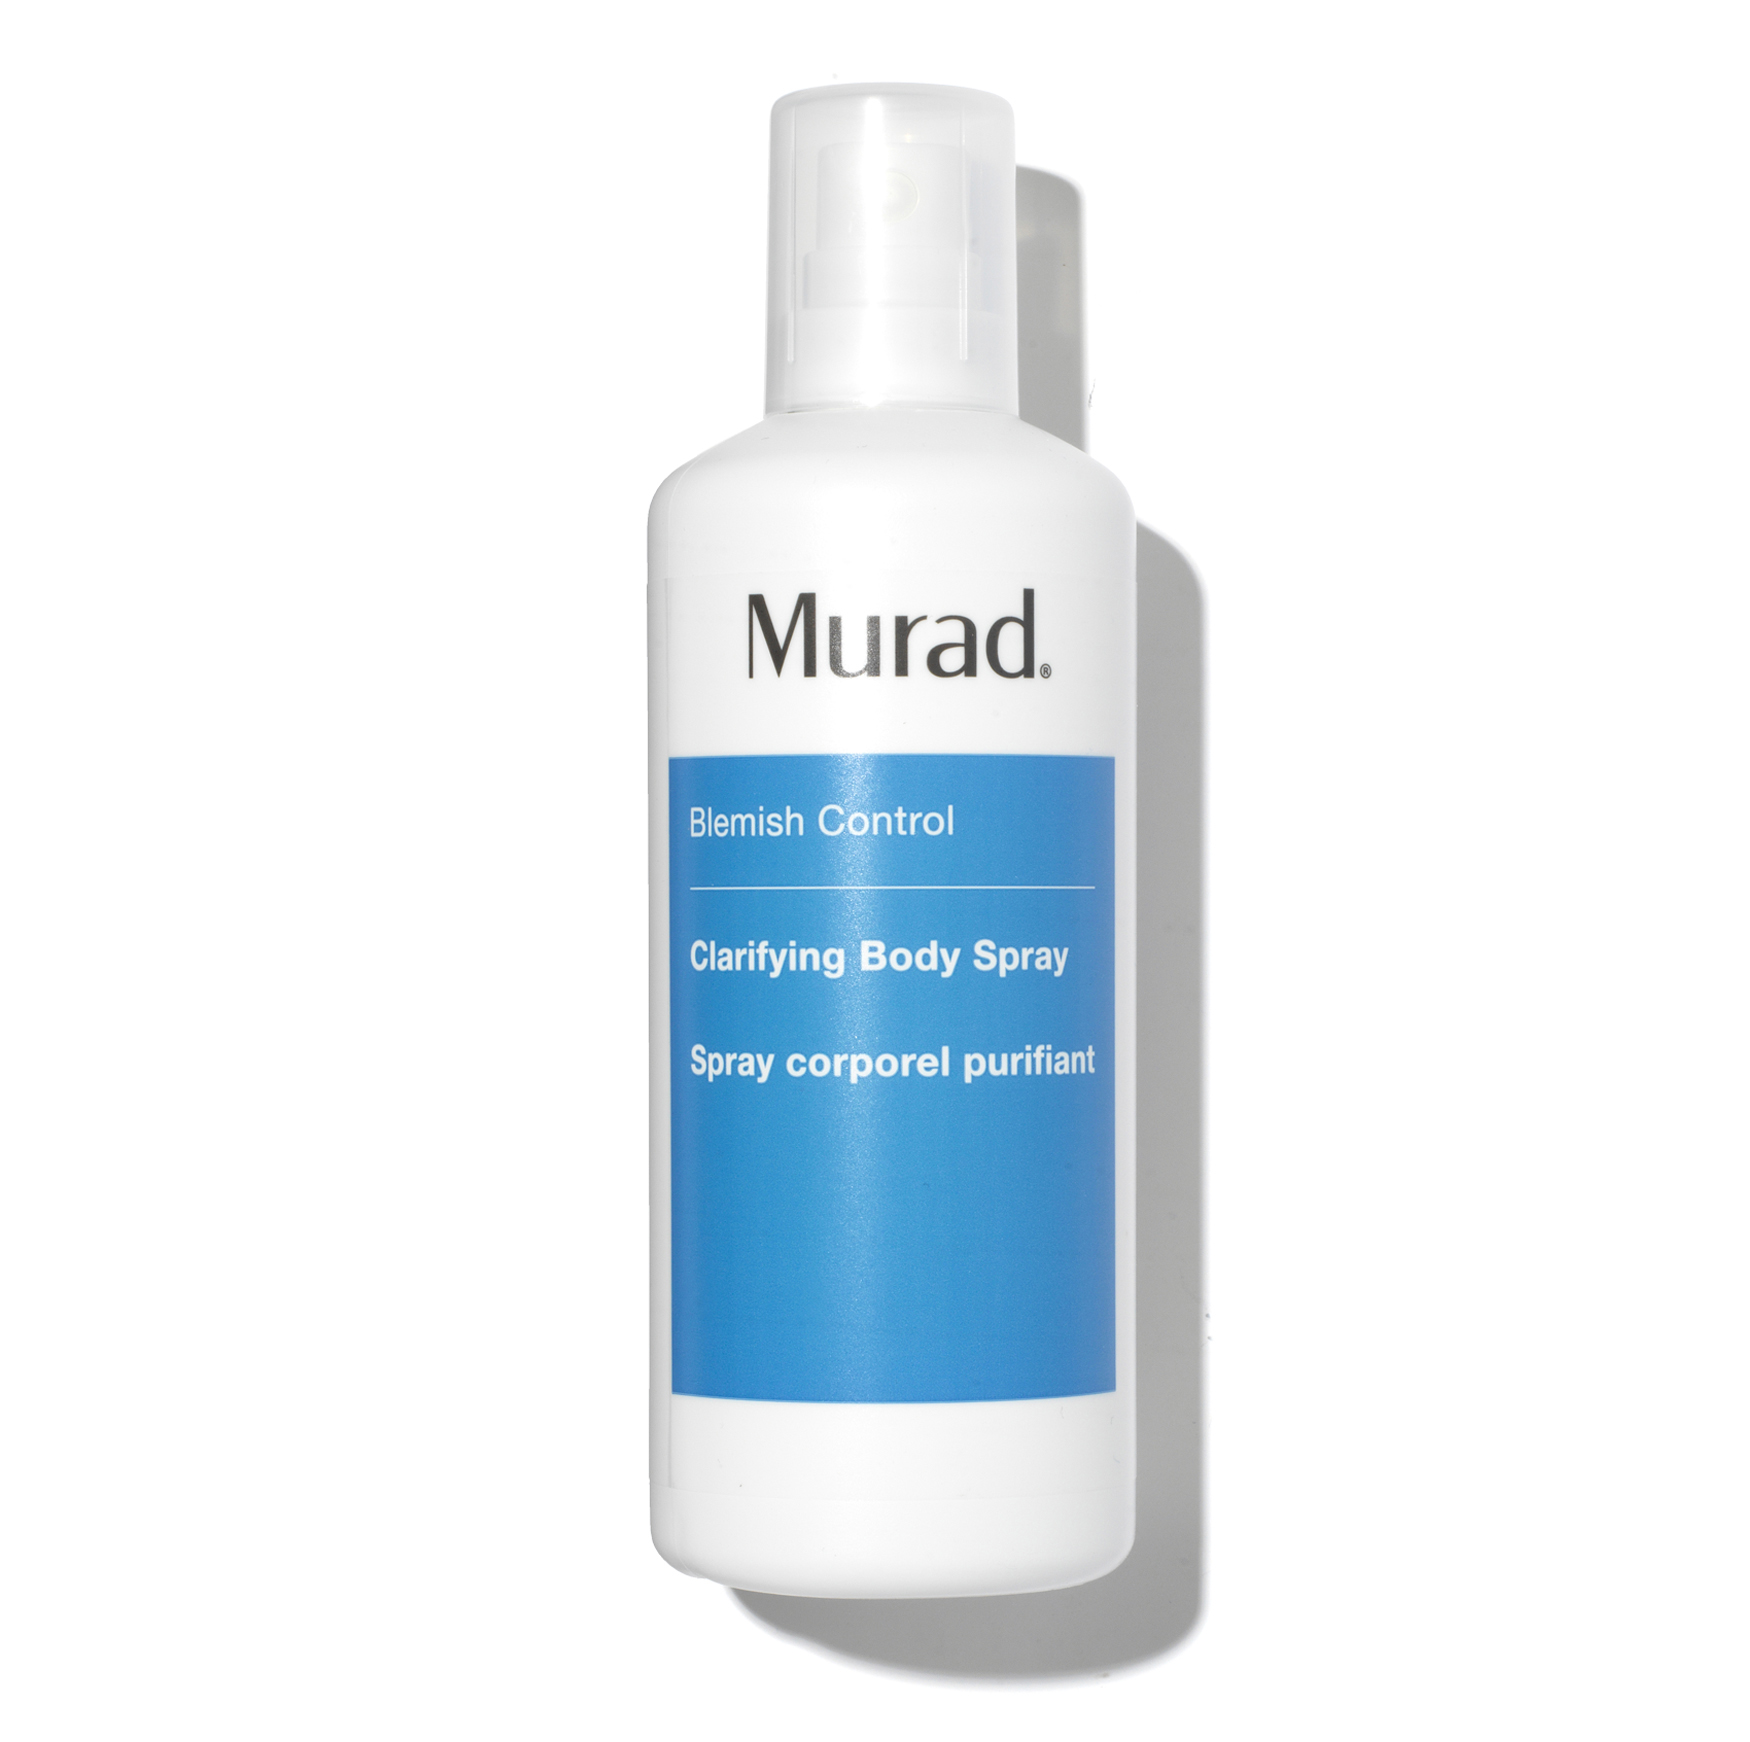 murad clarifying body spray